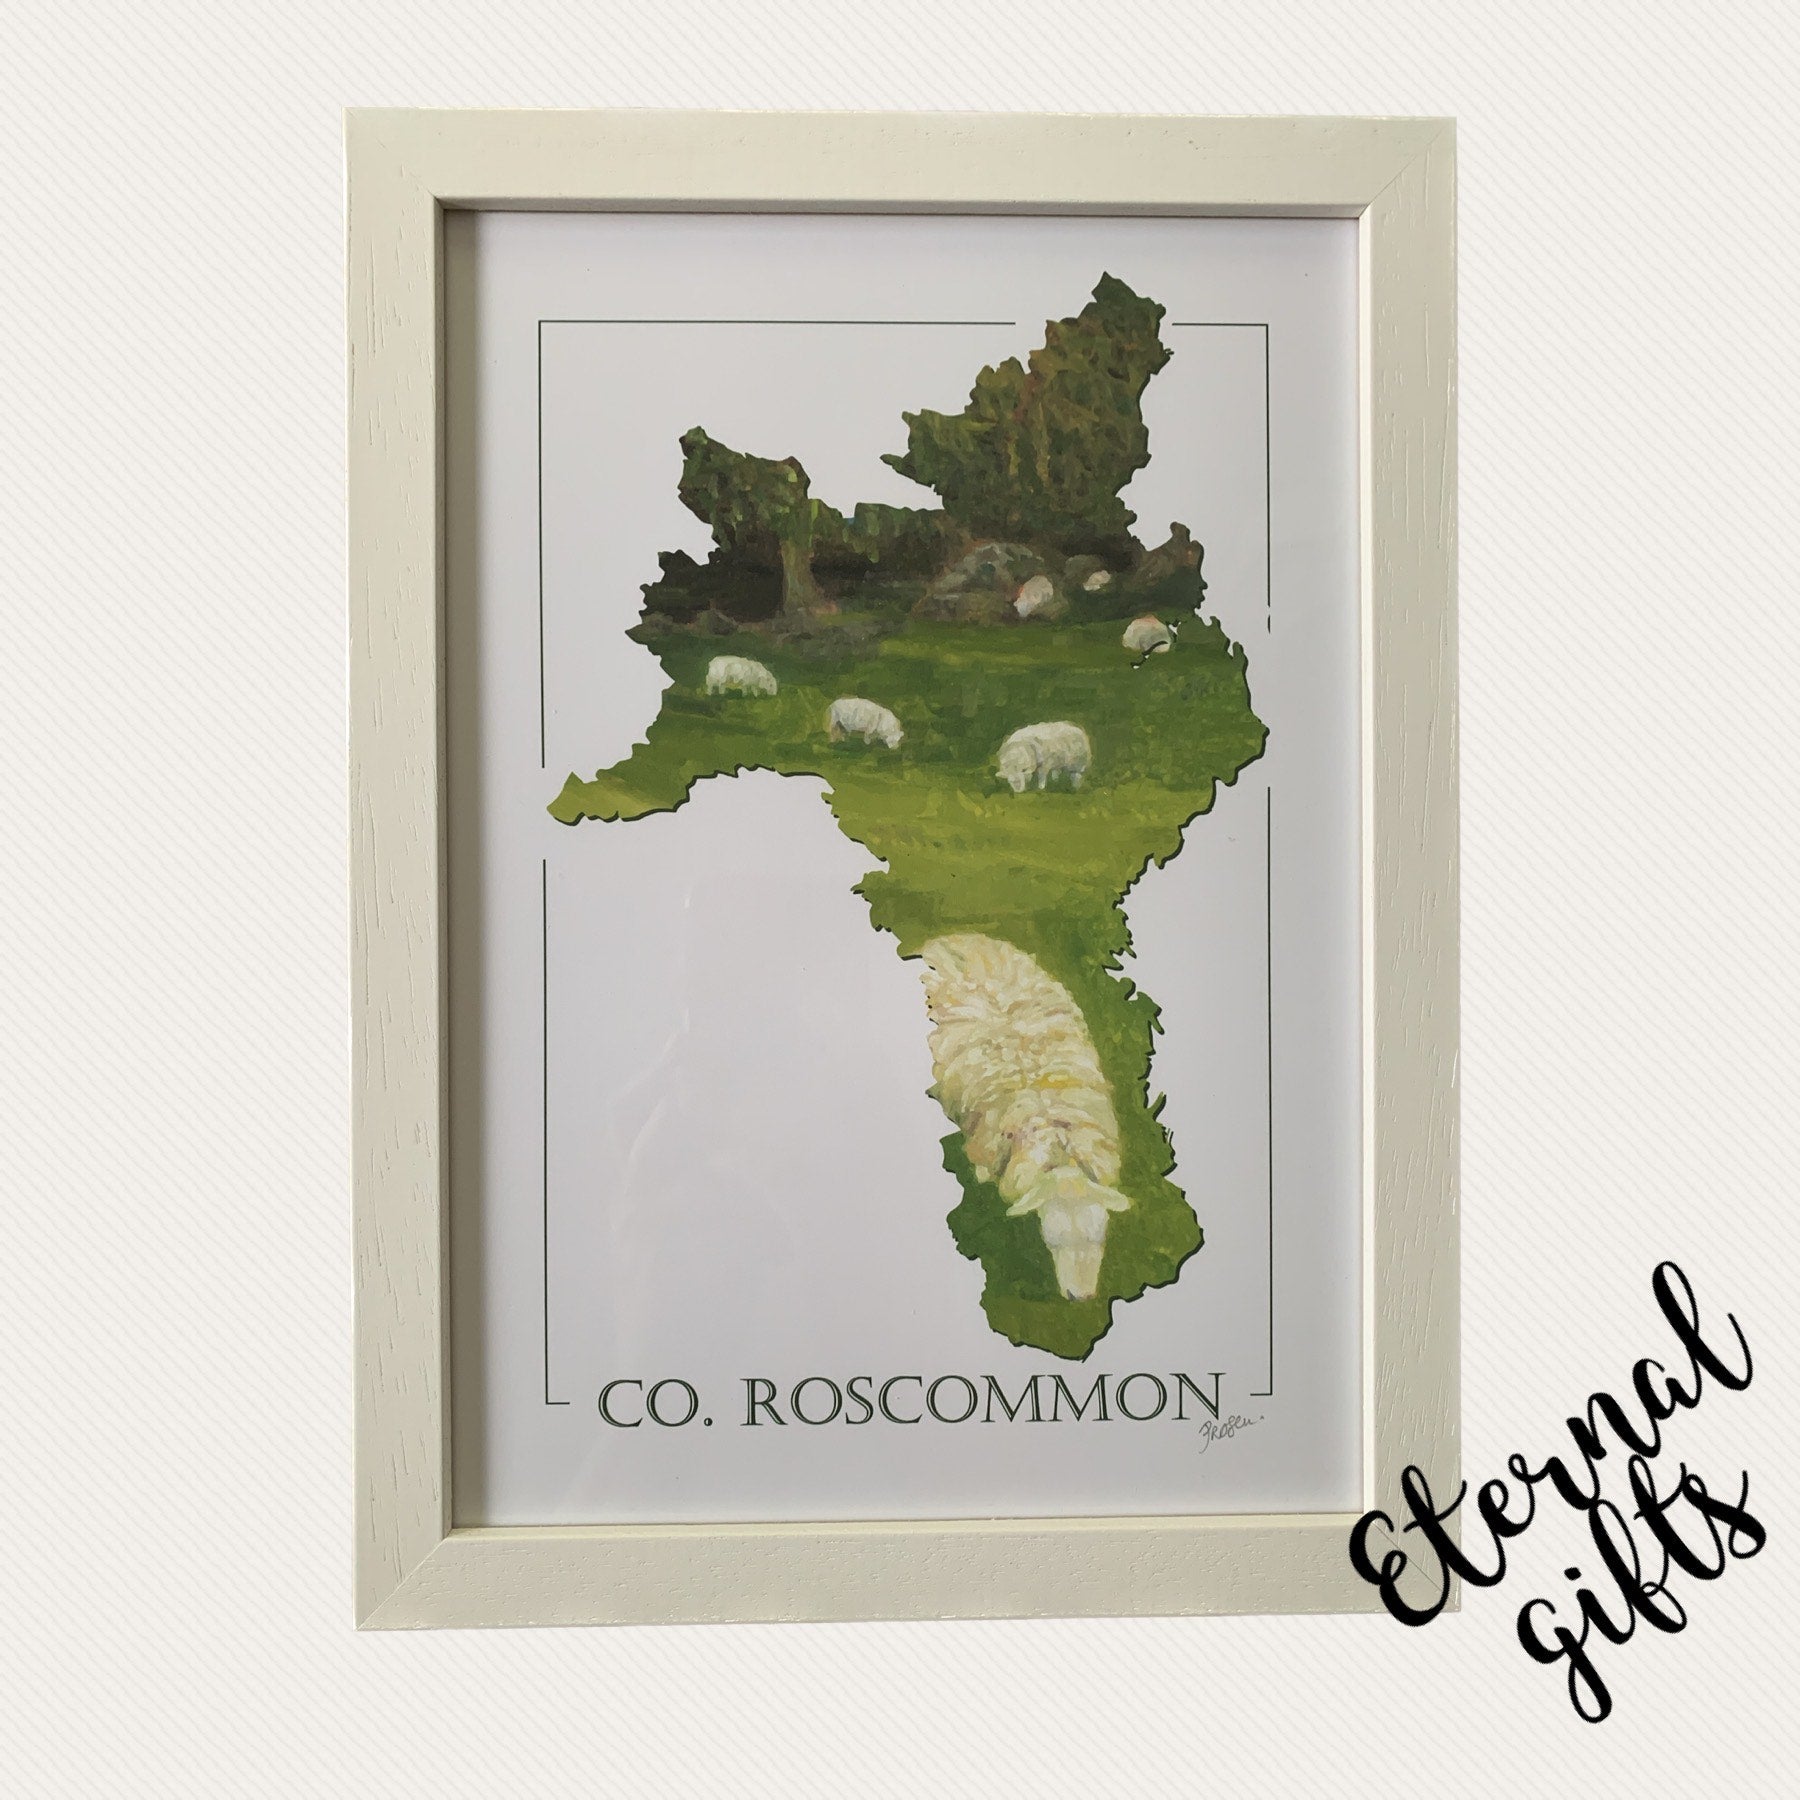 Co. Roscommon Print (Framed) by Artist Clemence Prosen